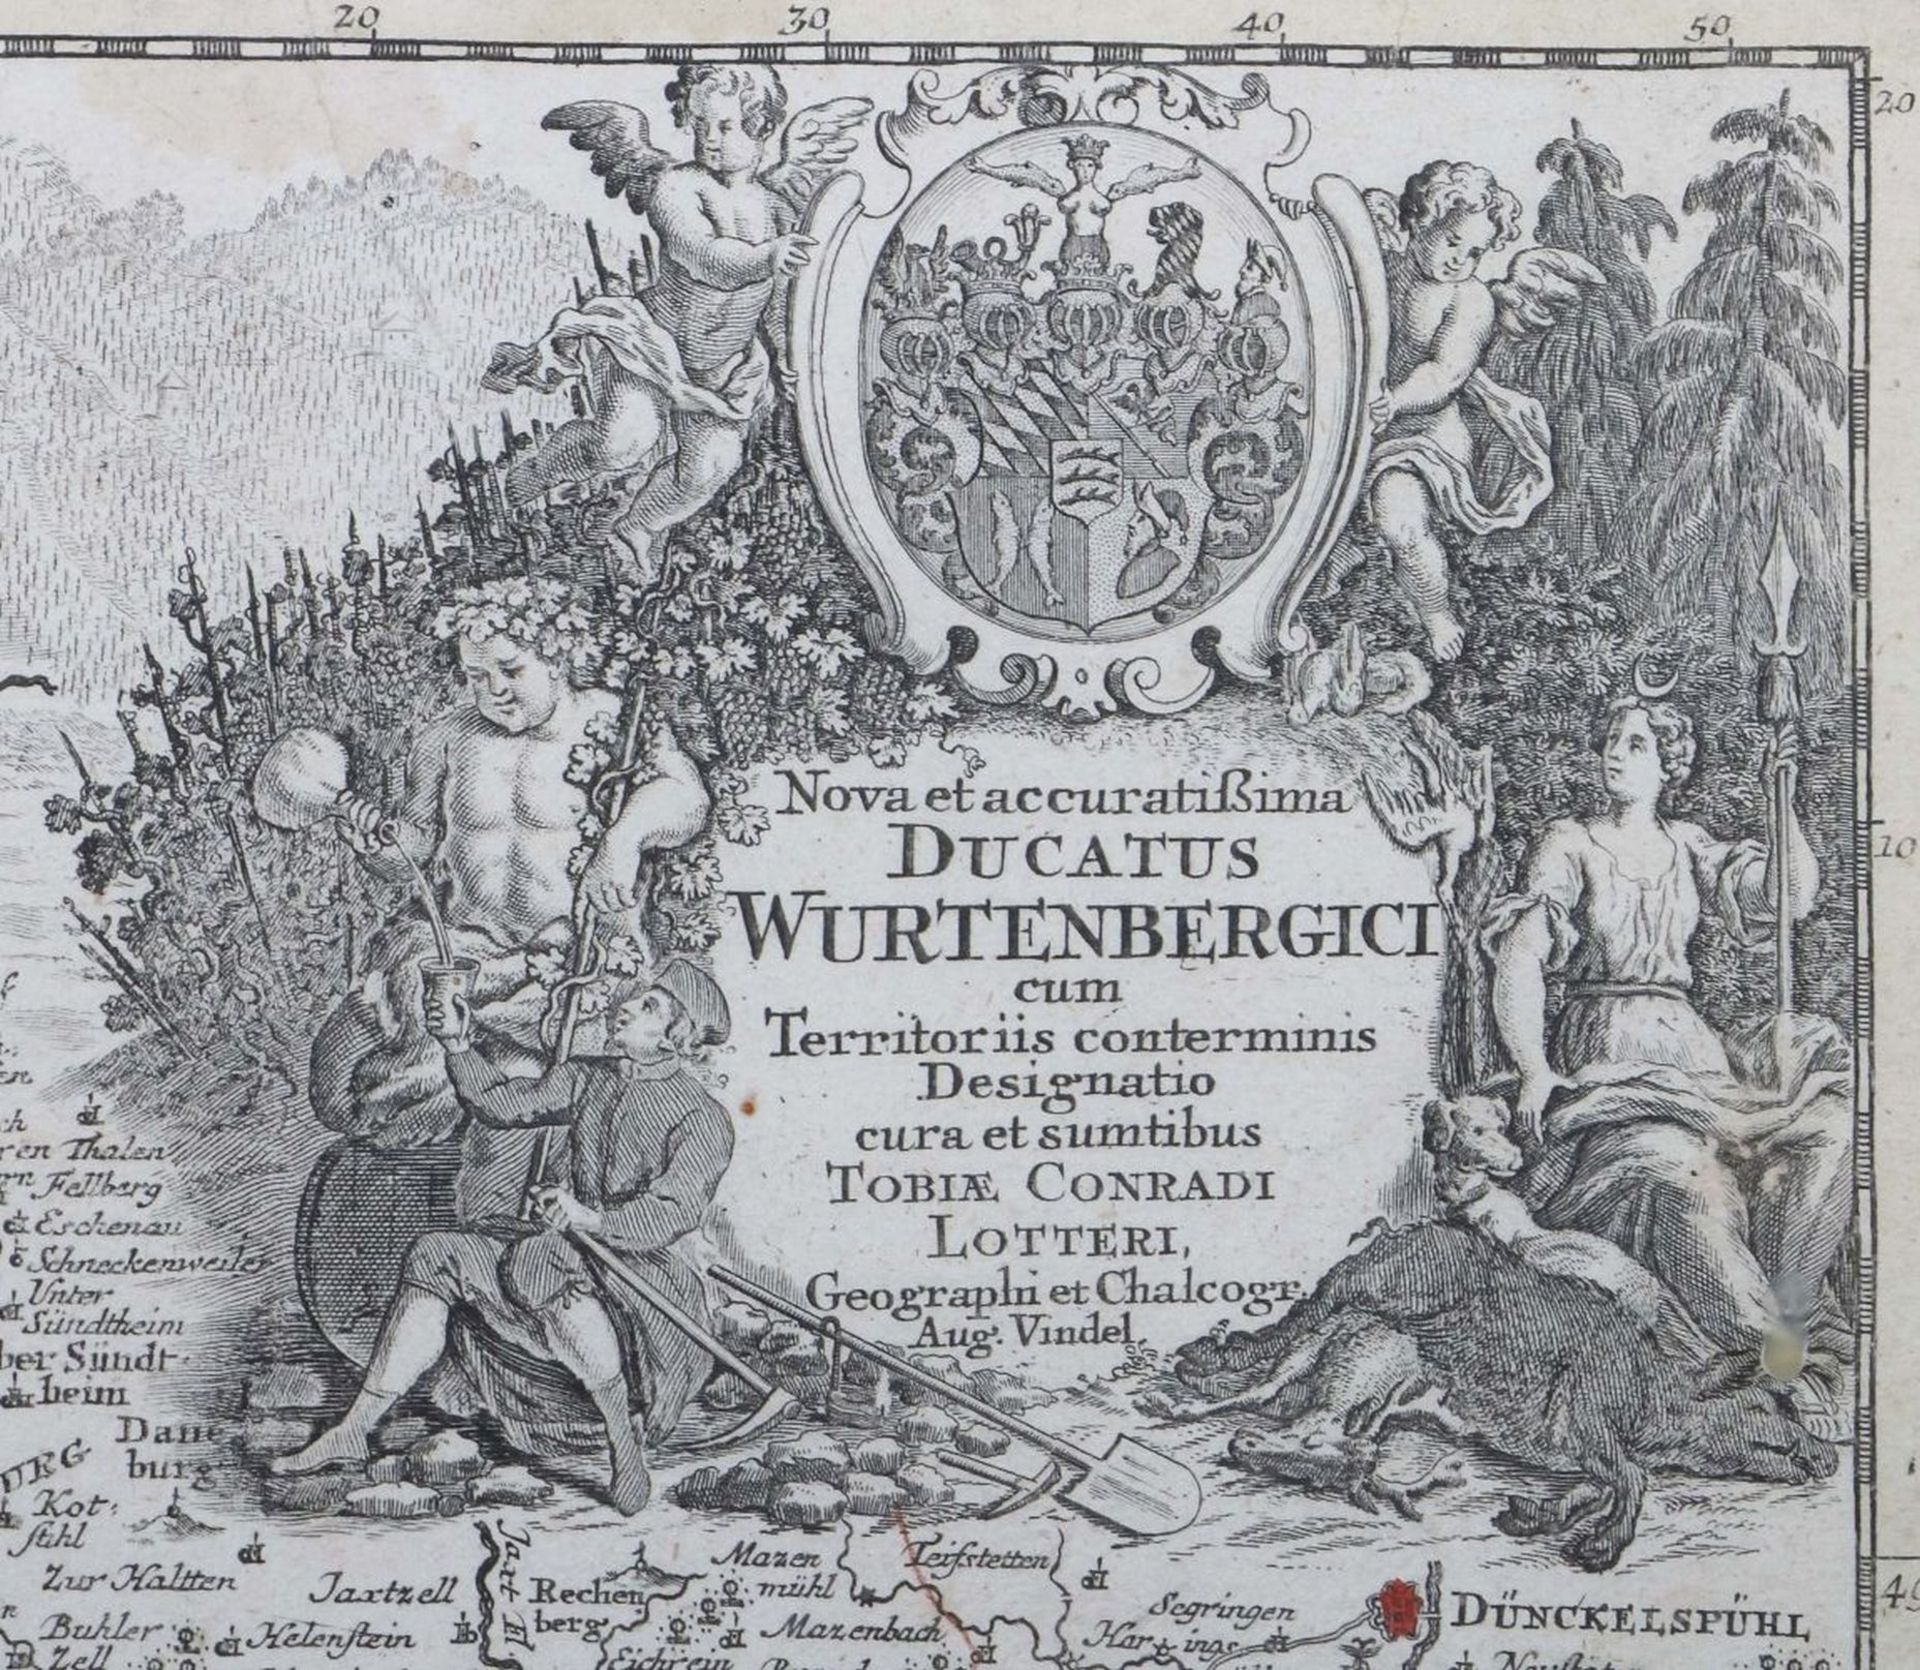 Lotter, Tobias Conrad 1717 - 1777 - Bild 3 aus 3